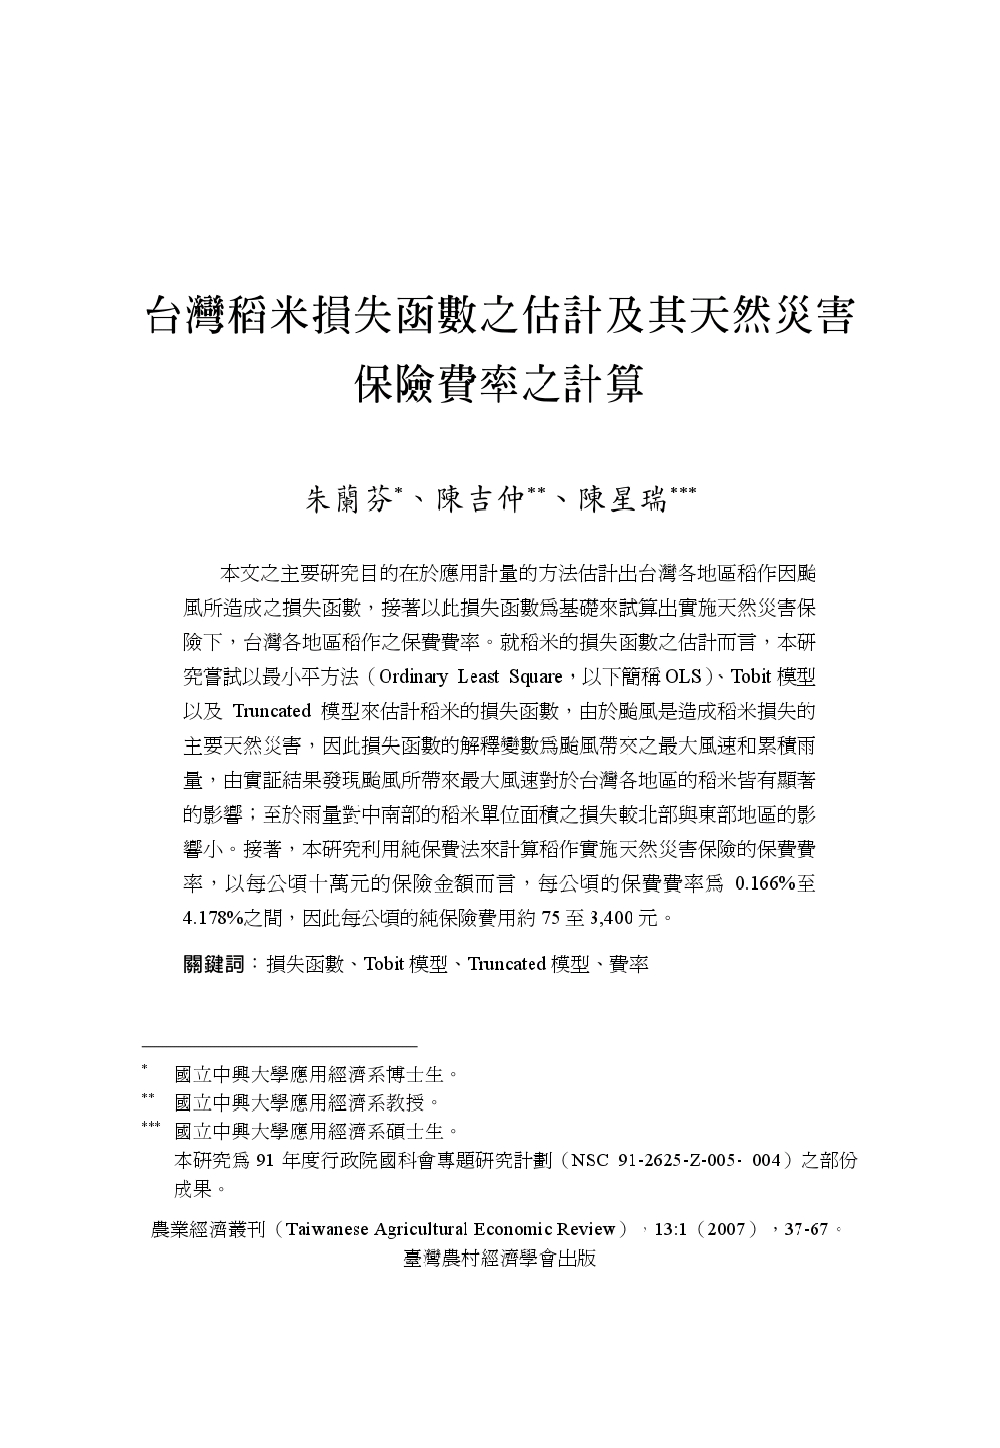 台灣稻米損失函數之估計及其天然災害保險費率之計算.jpg